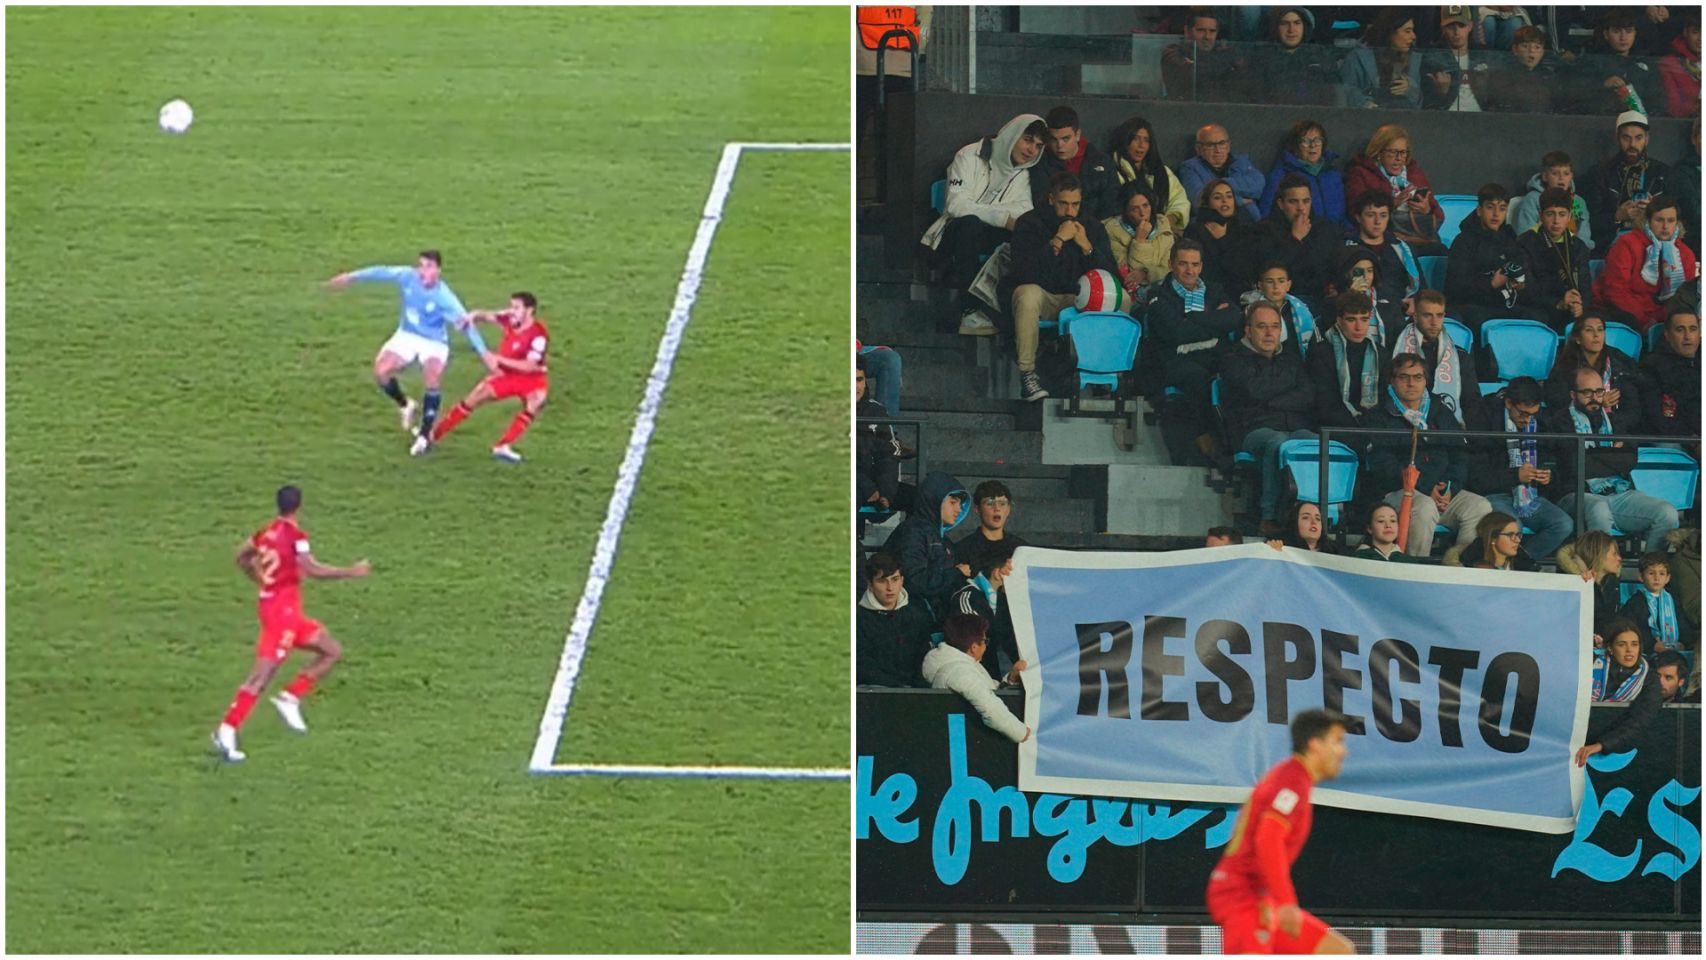 Imagen del penalti no señalado al Celta y de una pancarta en la grada de Balaídos.